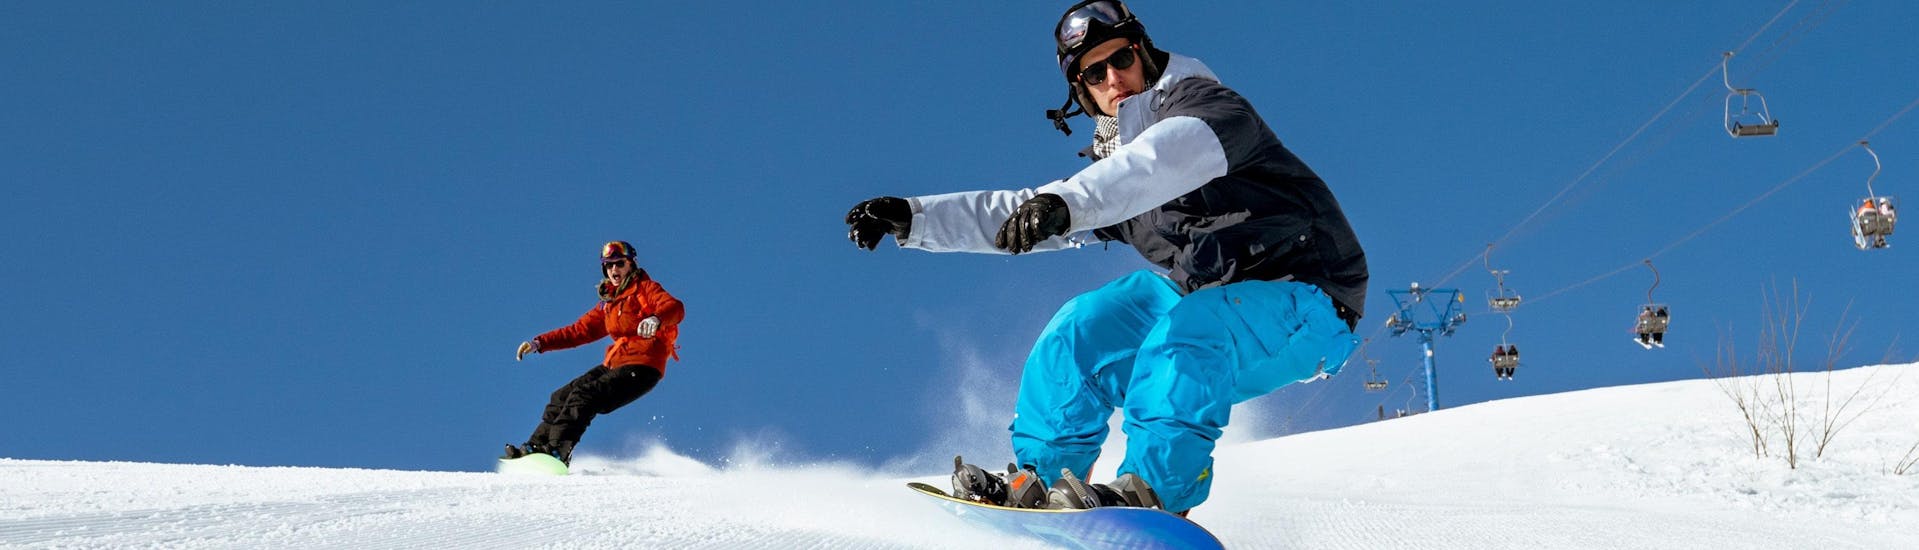 Une snowboardeuse se prépare à apprendre le snowboard lors d'un cours de snowboard dans la destination de sports d'hiver Chamonix-Mont-Blanc.